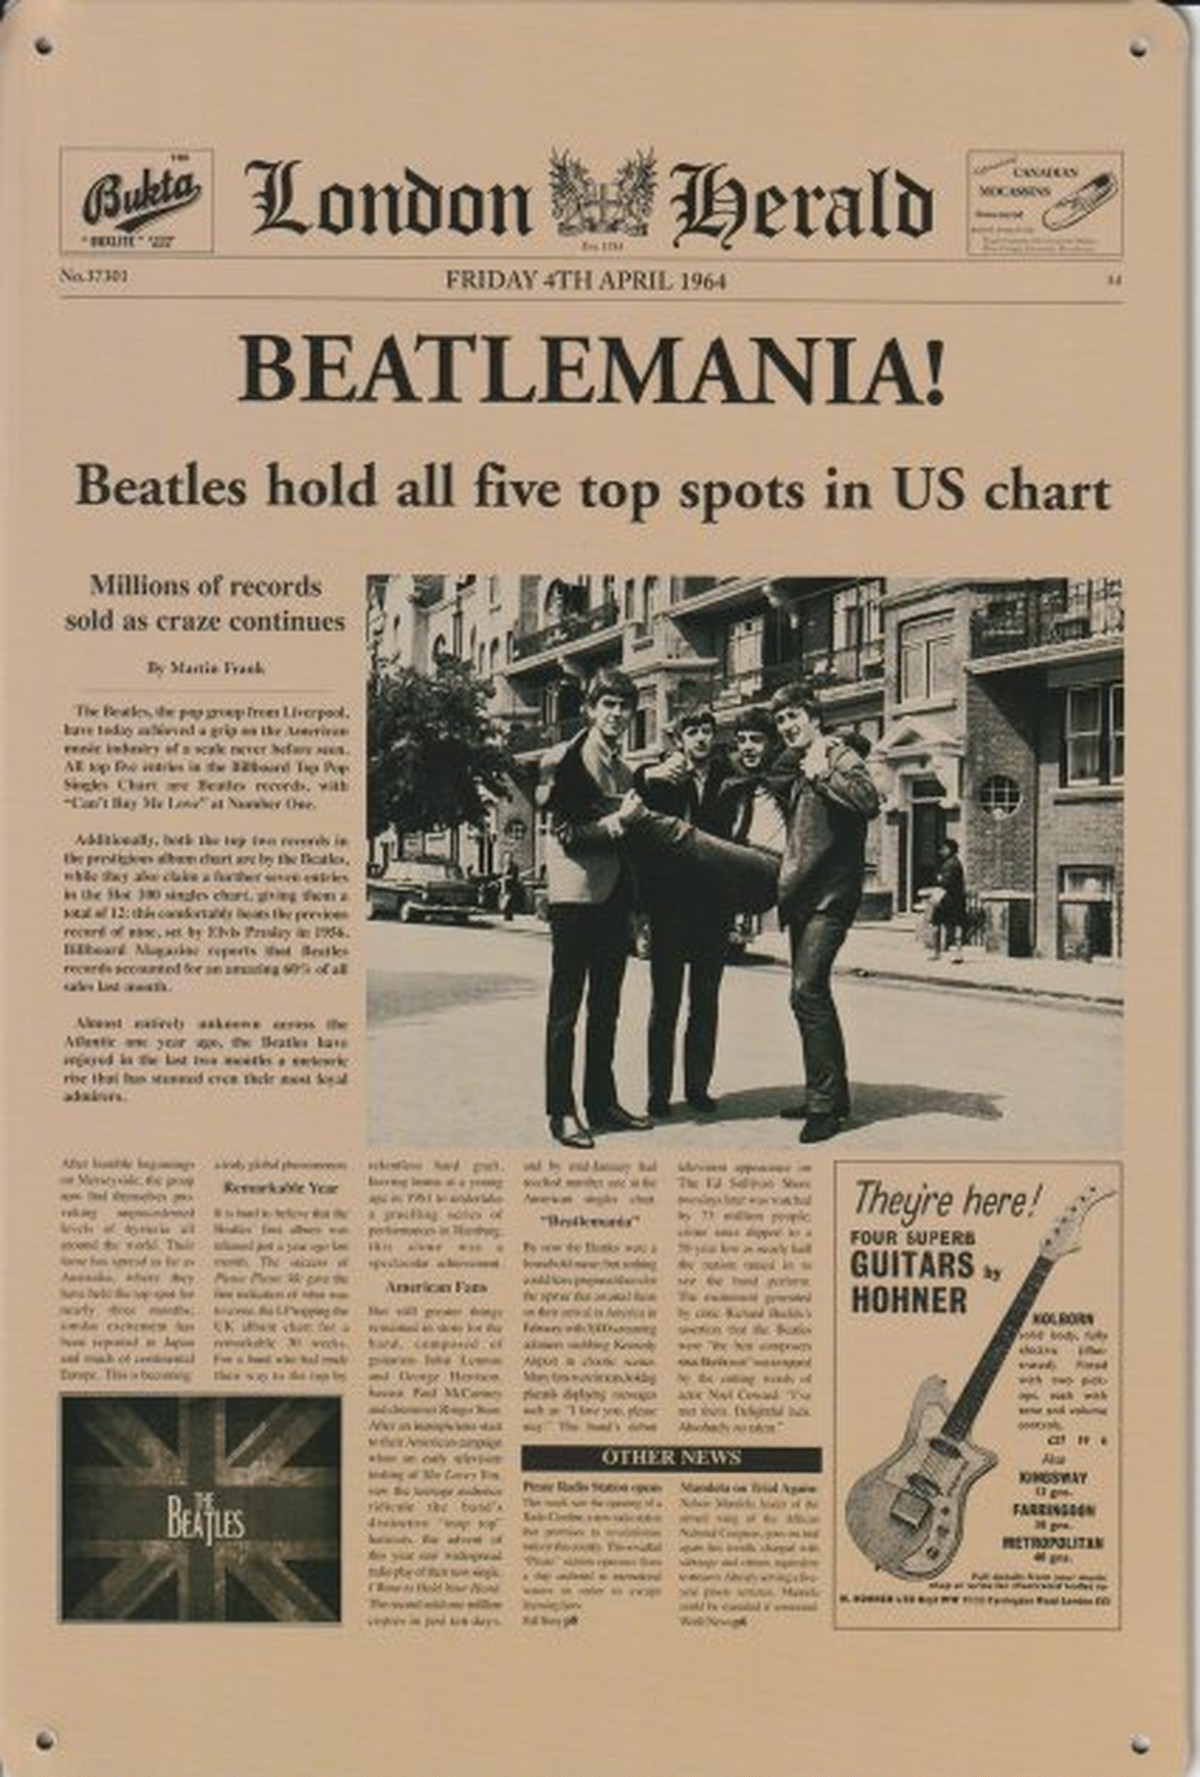 アメリカン 雑貨 ヴィンテージ風 レトロ ブリキ看板 The Beatles ロンドン ヘラルド Monluxe